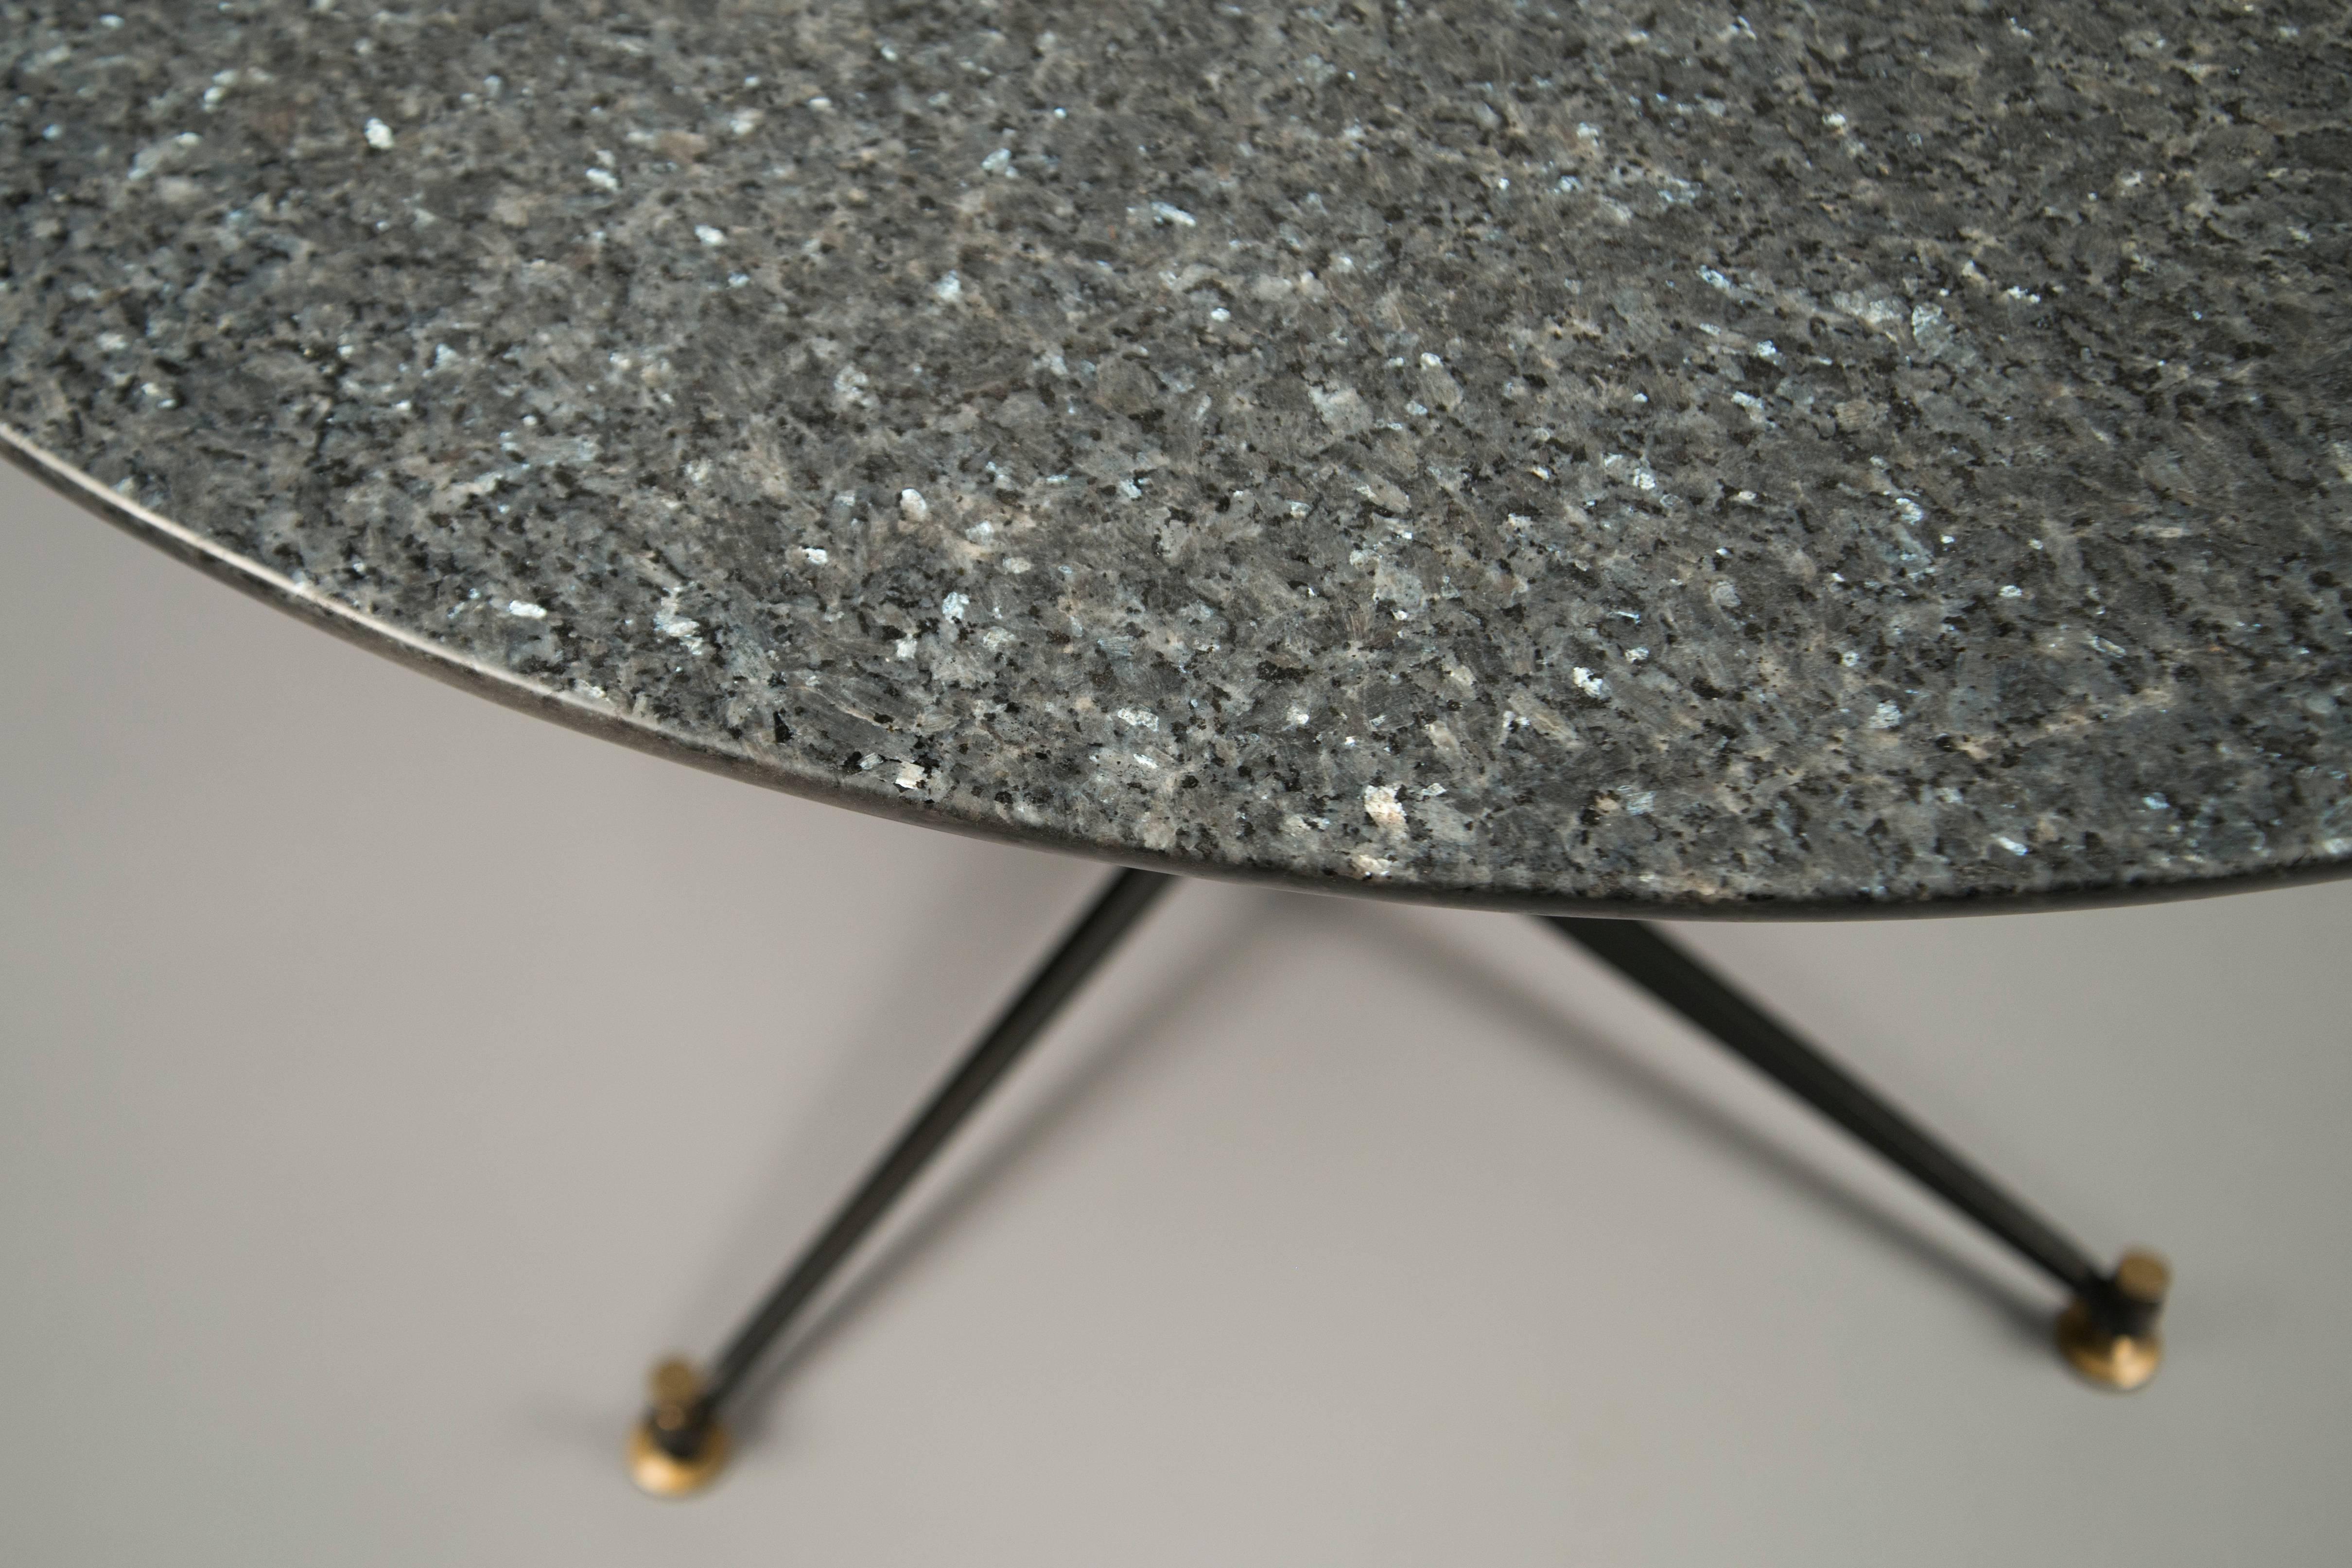 Table centrale circulaire composée d'une base en métal noir avec vis et sabots en bronze, supportant un plateau en granit gris.
Notre numéro N-10244.